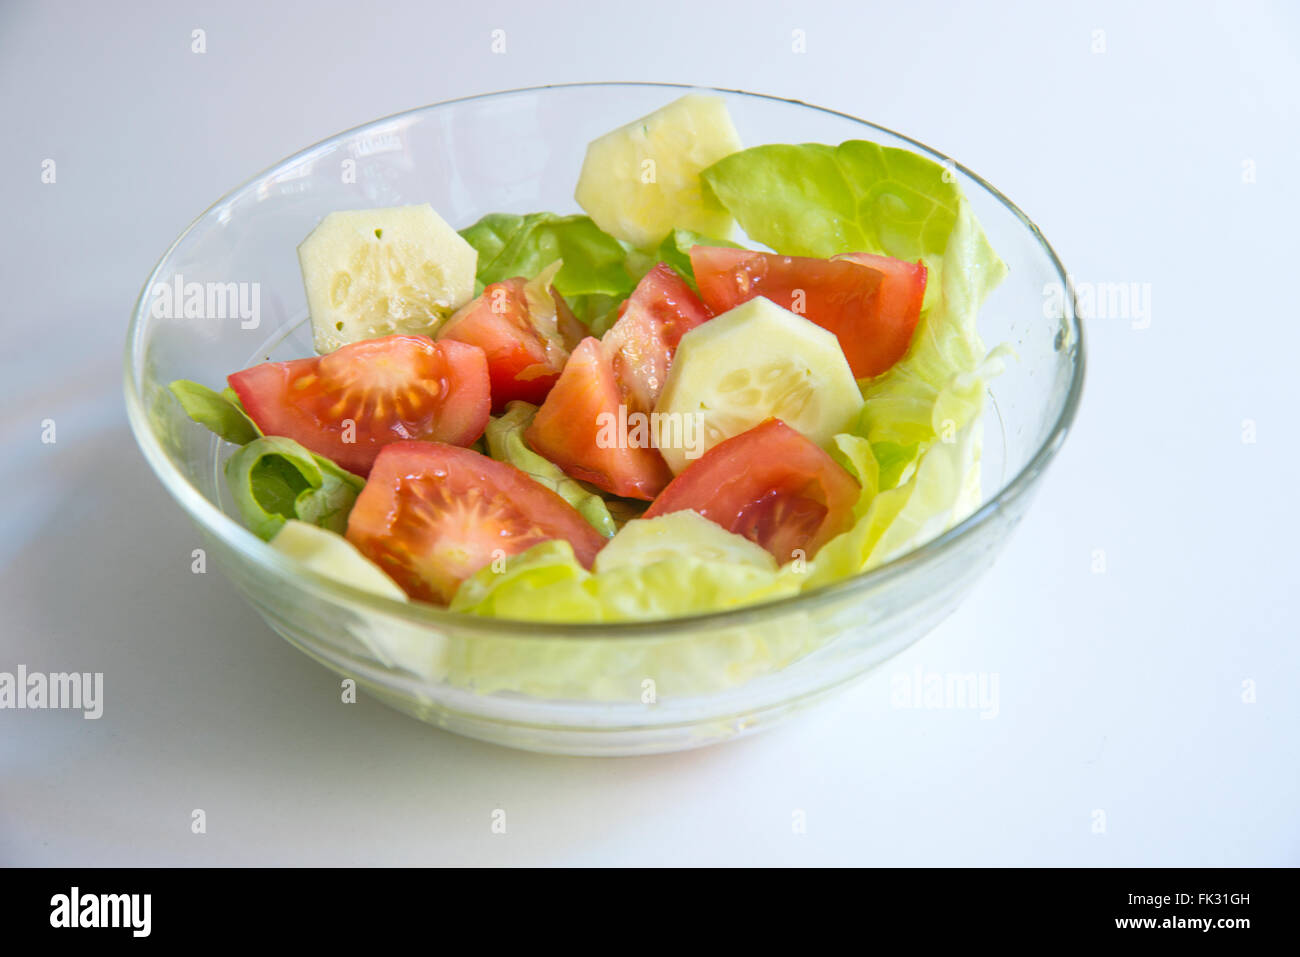 Bowl of mixed salad. Stock Photo